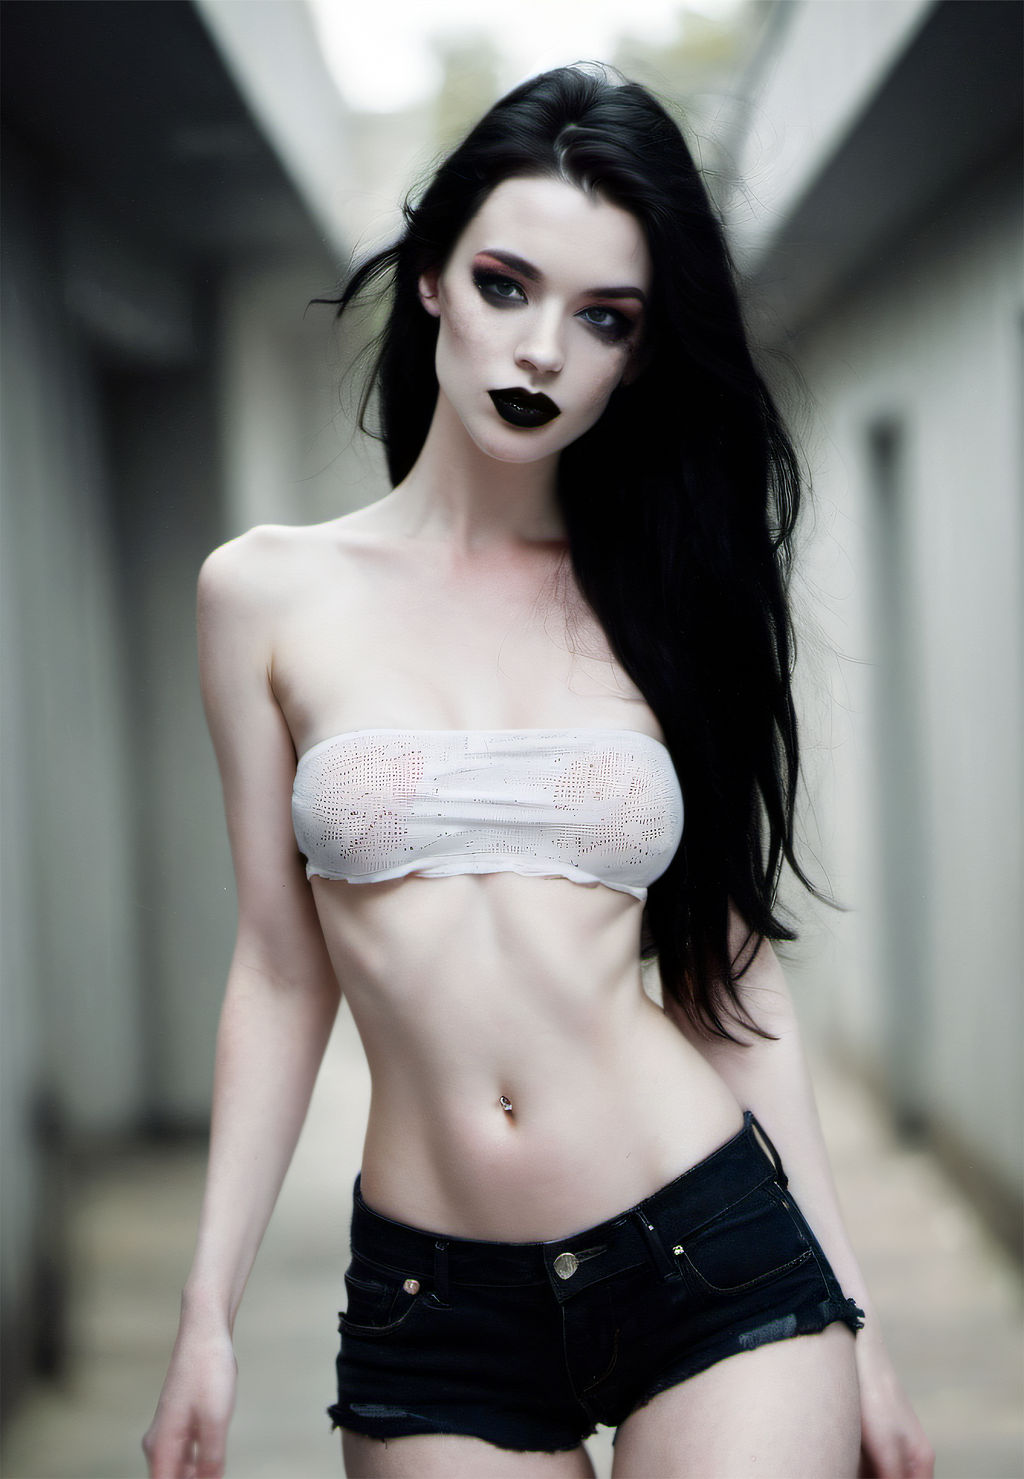 Elegant Woman in Black Dress by JayNL on DeviantArt